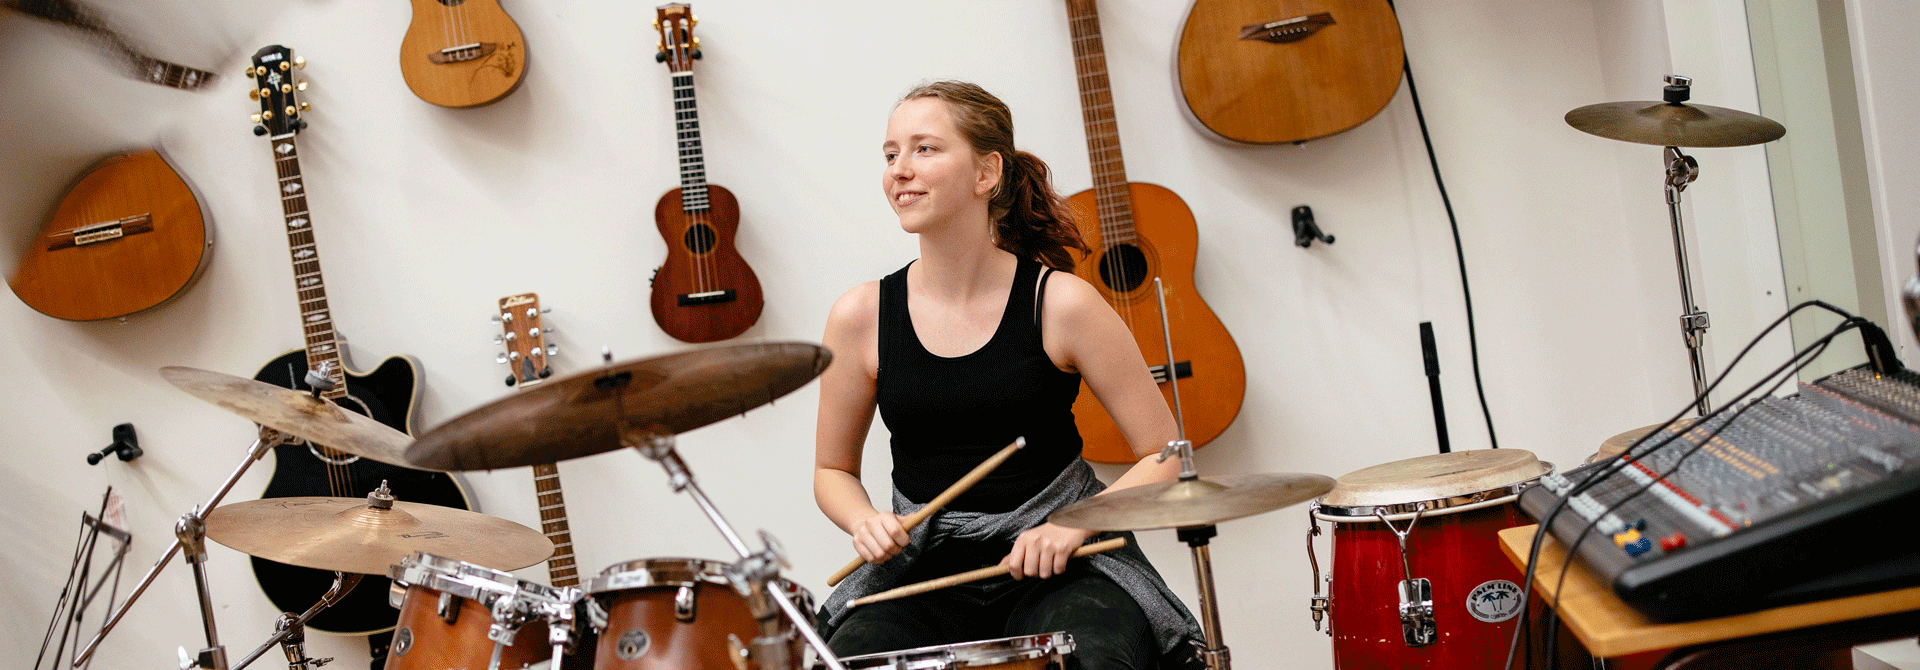 Pige der spiller trommer